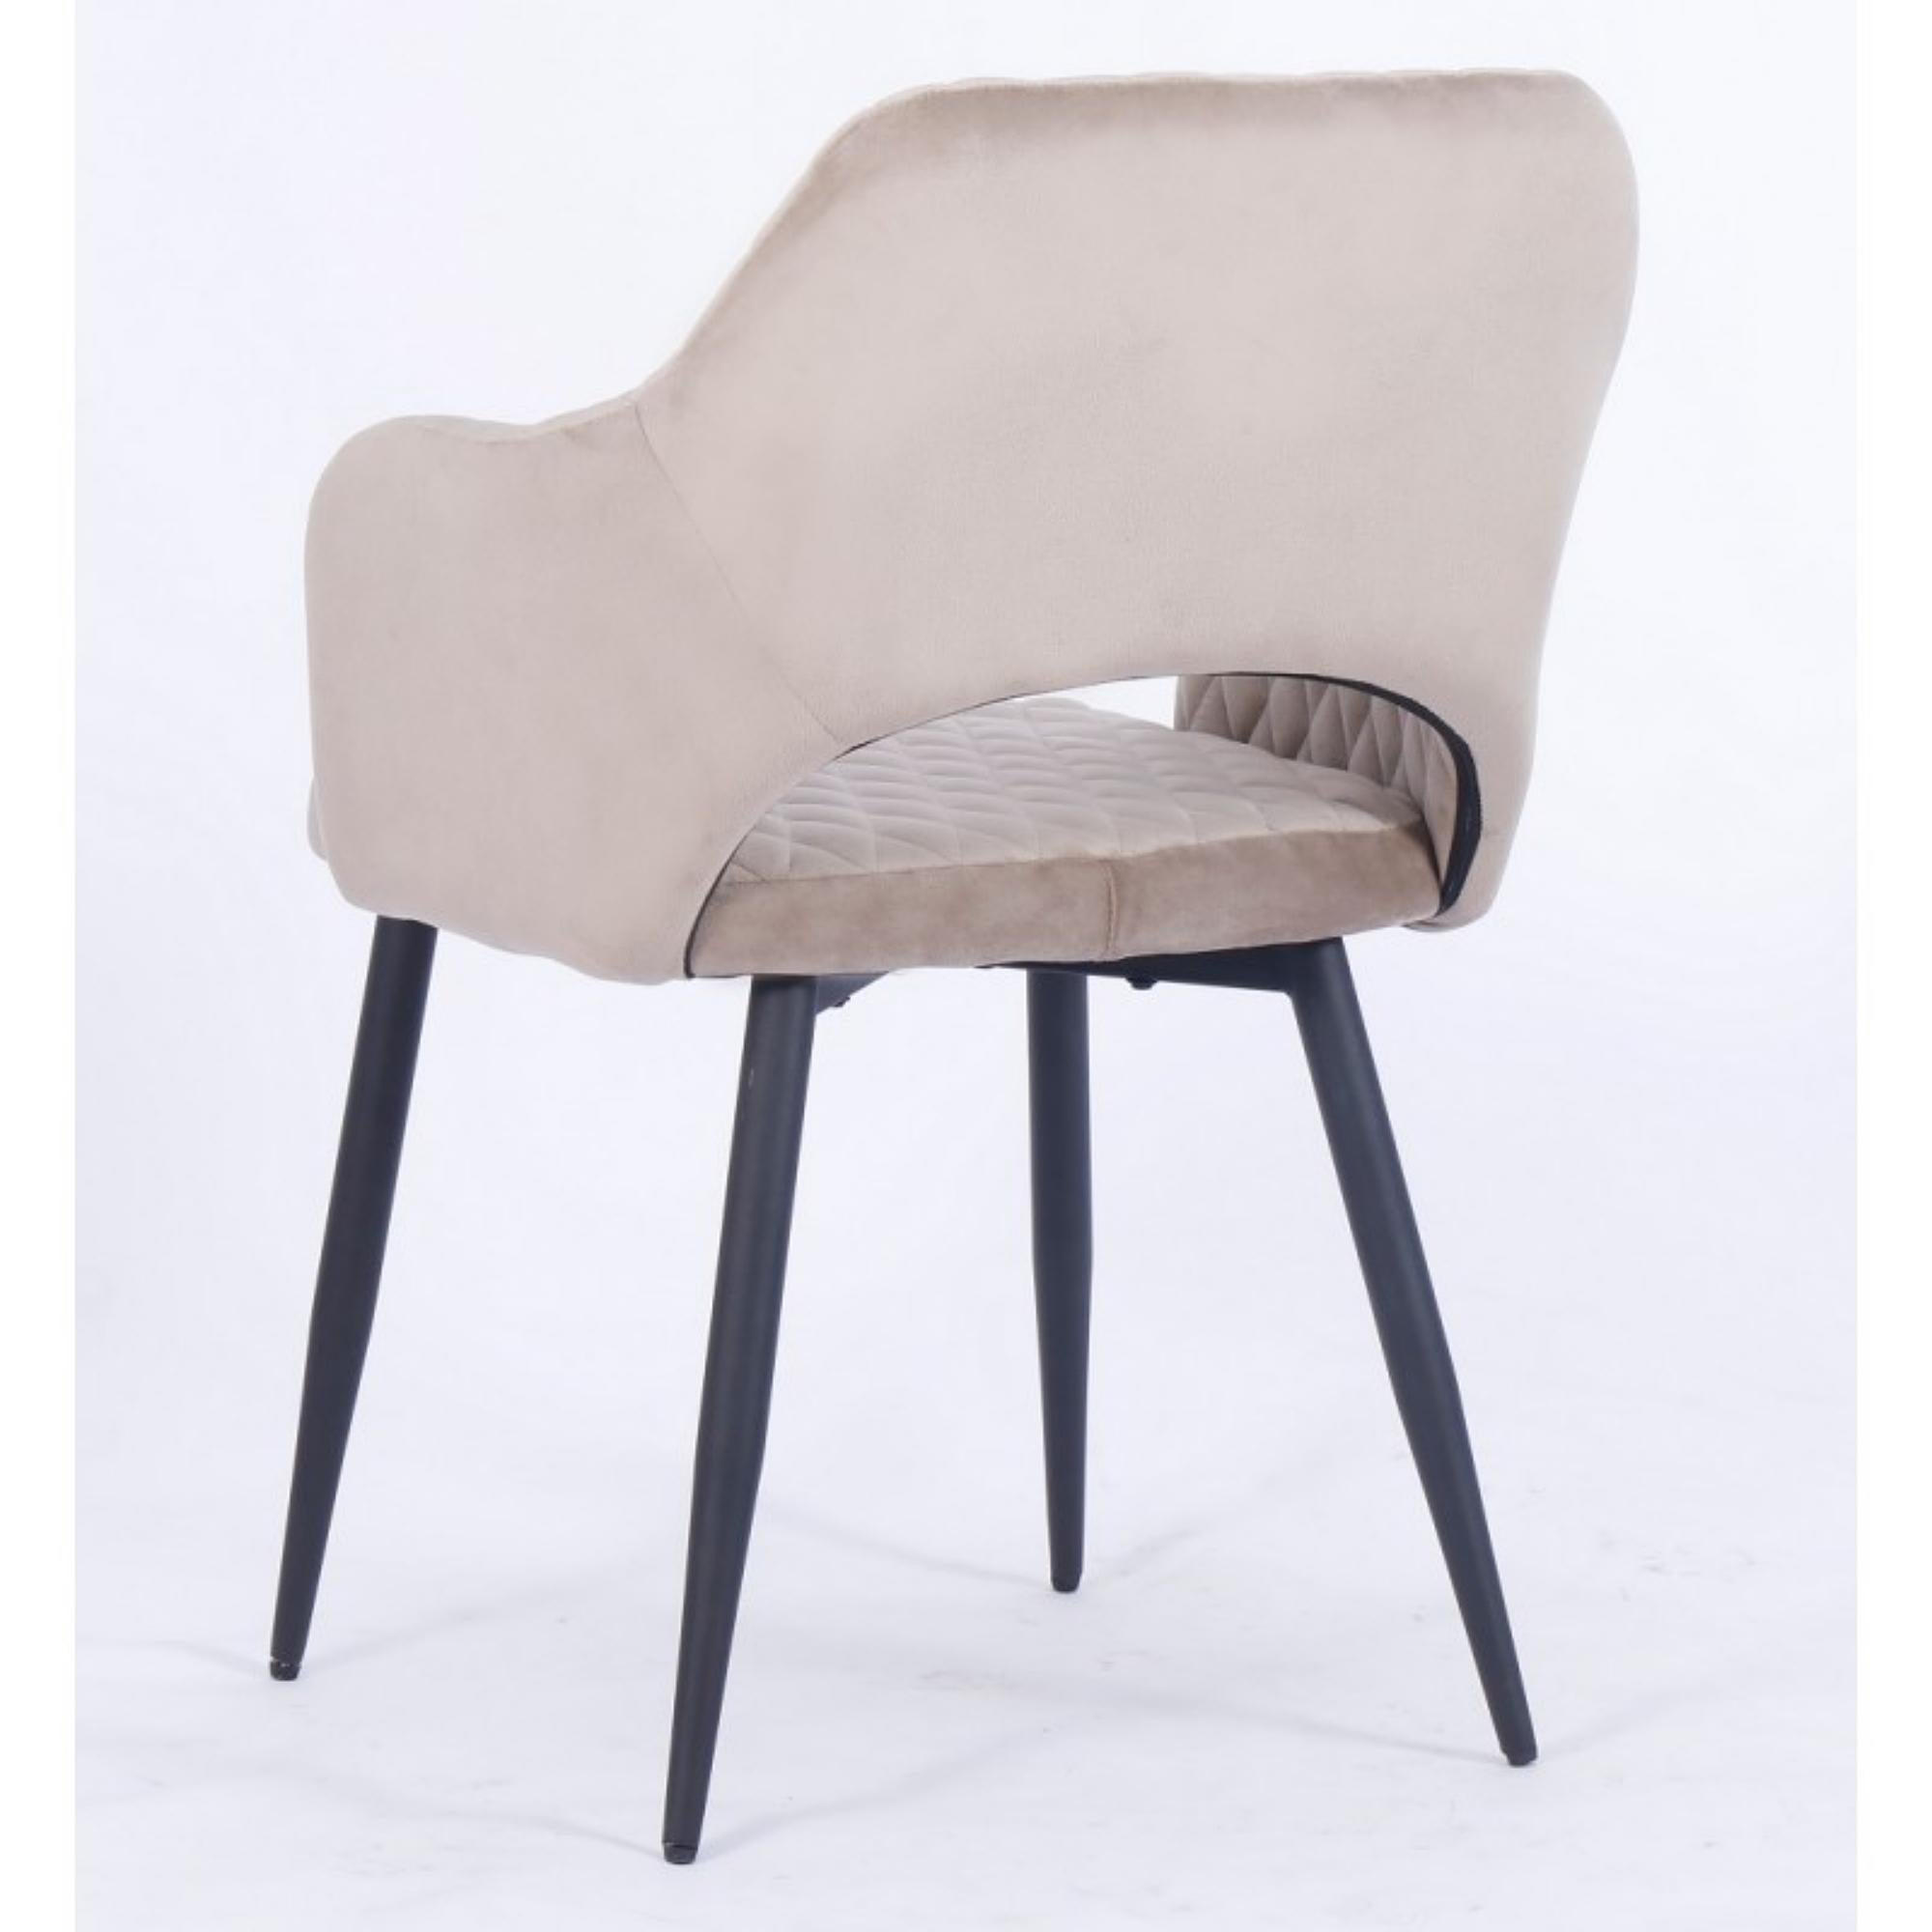 Spanish Pair of Mink Brown Velvet Upholstered Metal Armchair New For Sale